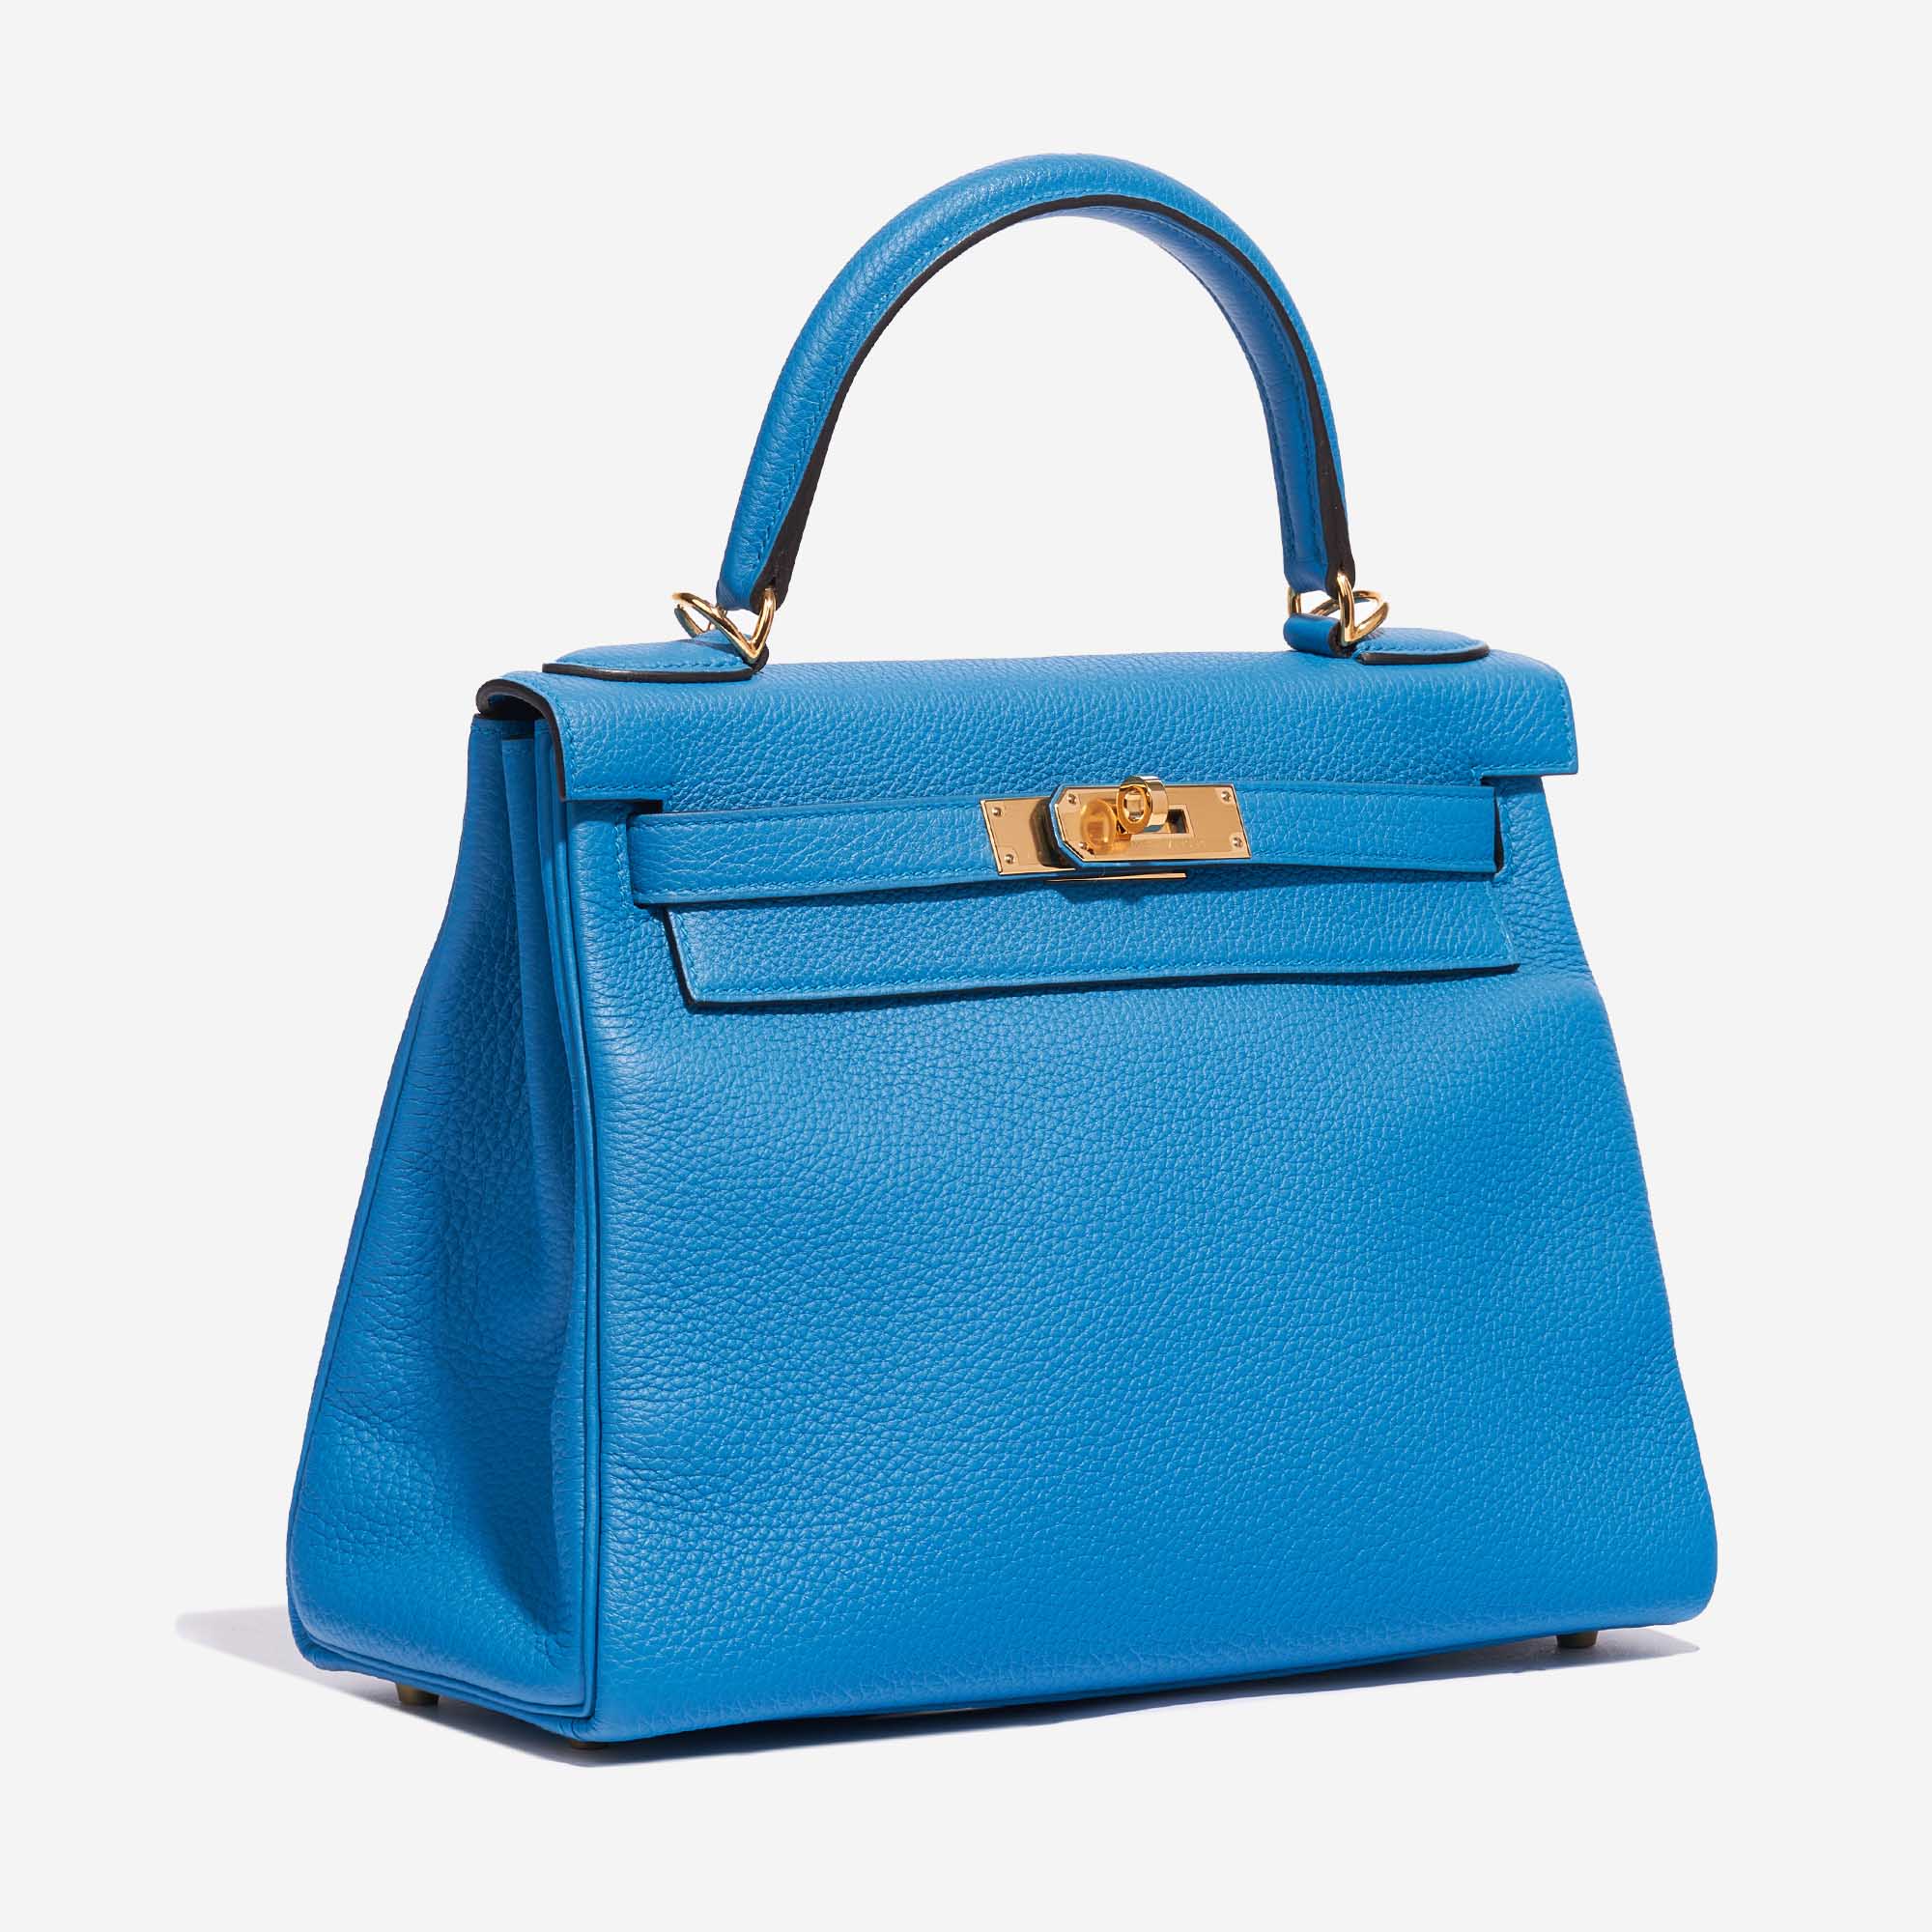 Pre-owned Hermès Tasche Kelly 28 Togo Blau Sansibar Blau Side Front | Verkaufen Sie Ihre Designer-Tasche auf Saclab.com